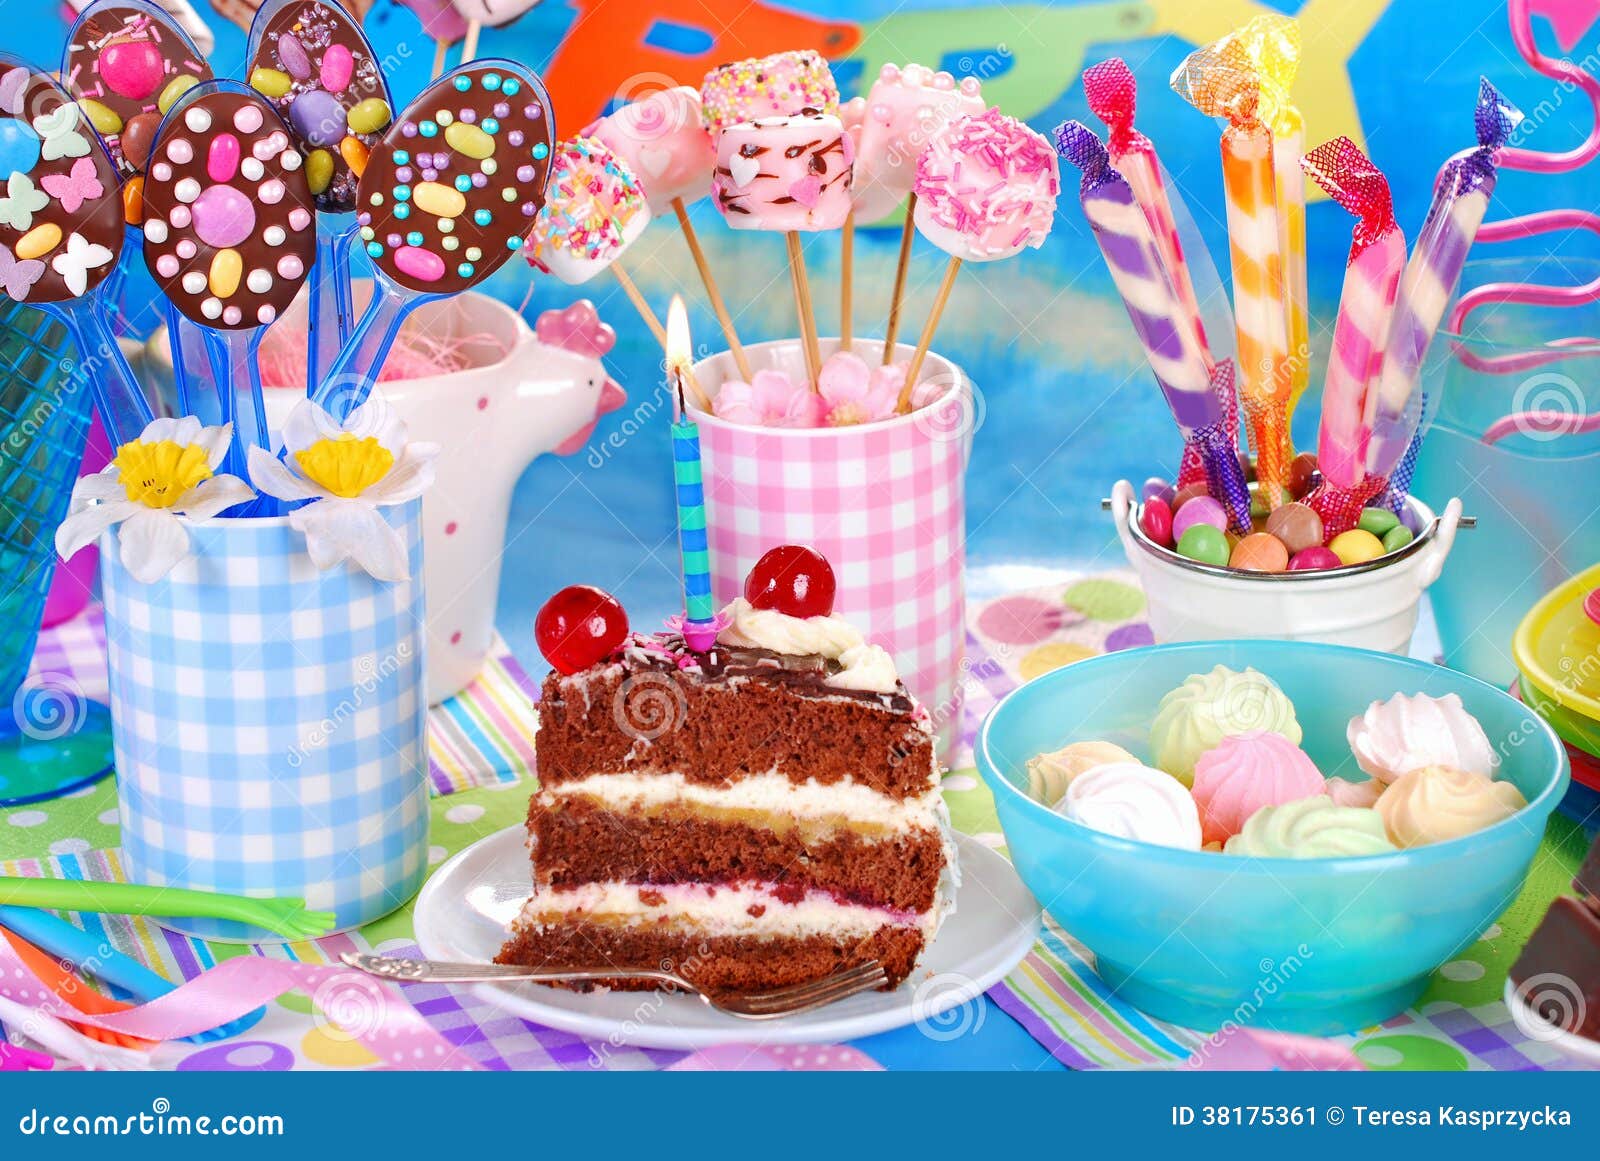 Bonbons Pour La Fête D'anniversaire D'enfants Image stock - Image du  carnaval, gosse: 38175361